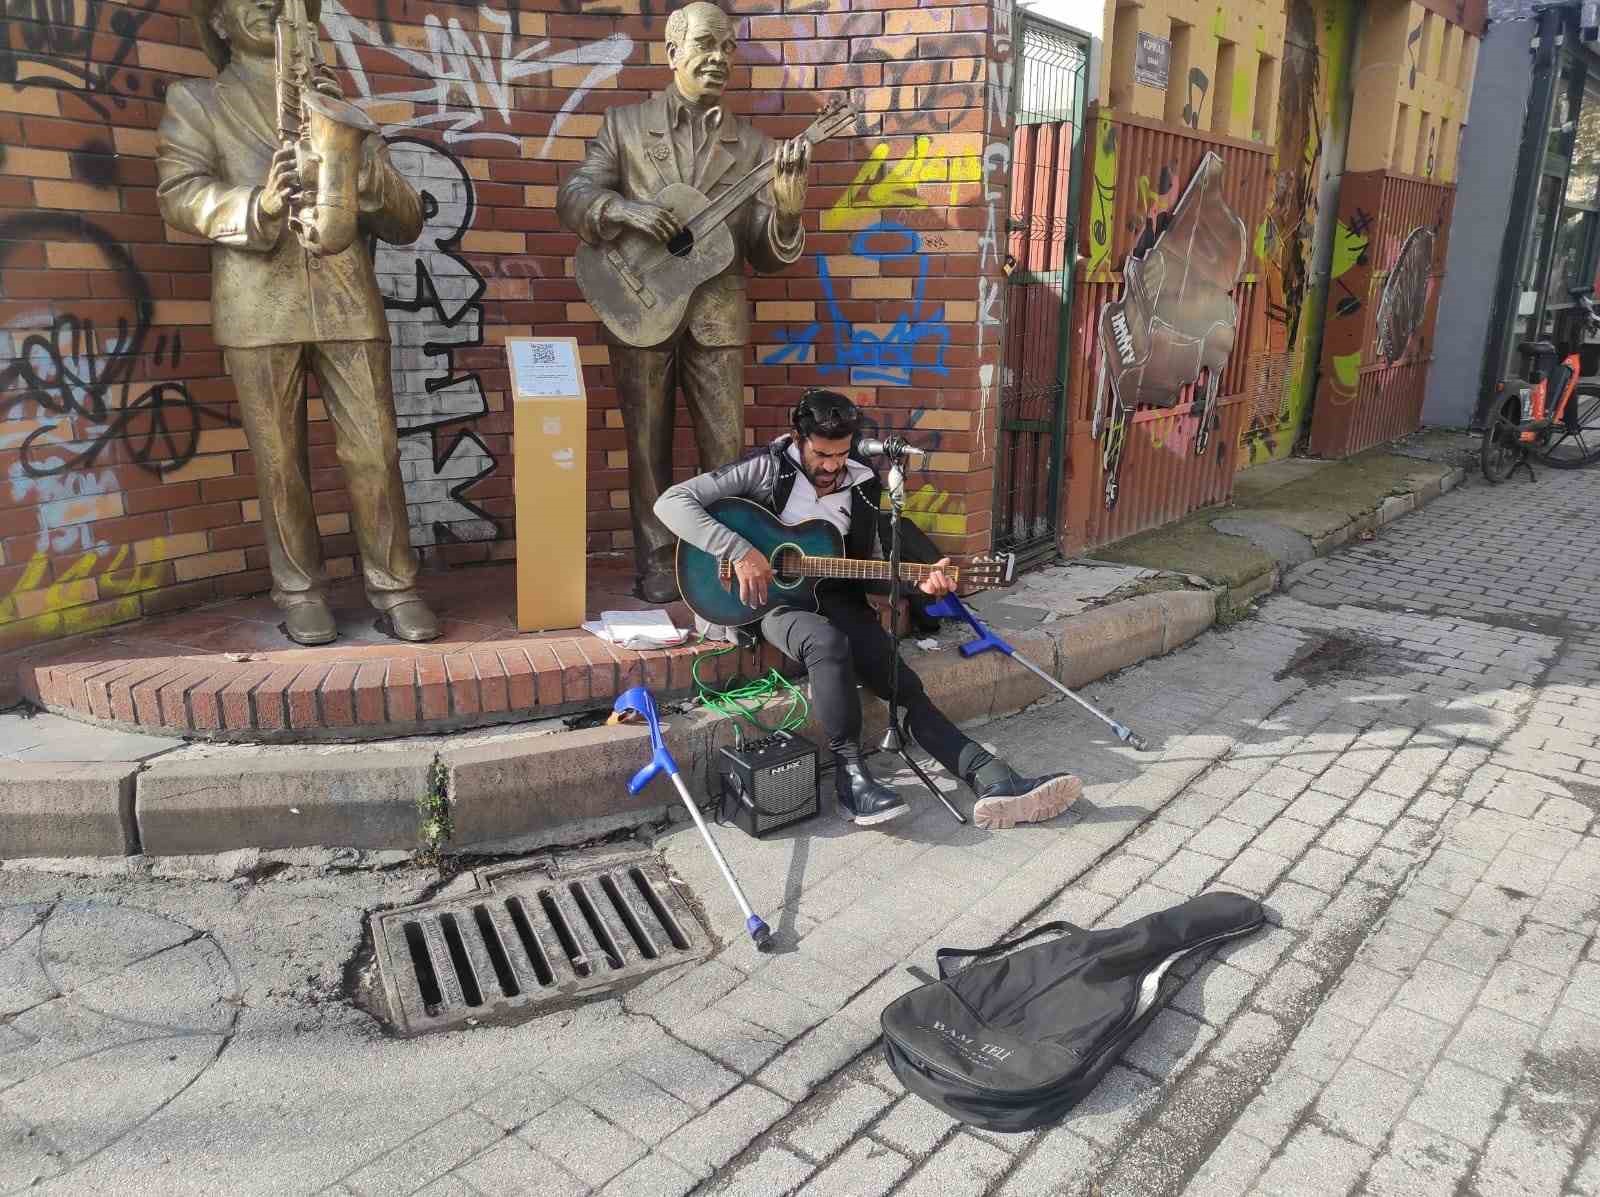 Yürüme engelli sanatçı şarkı söylemek için yaz-kış sokakta